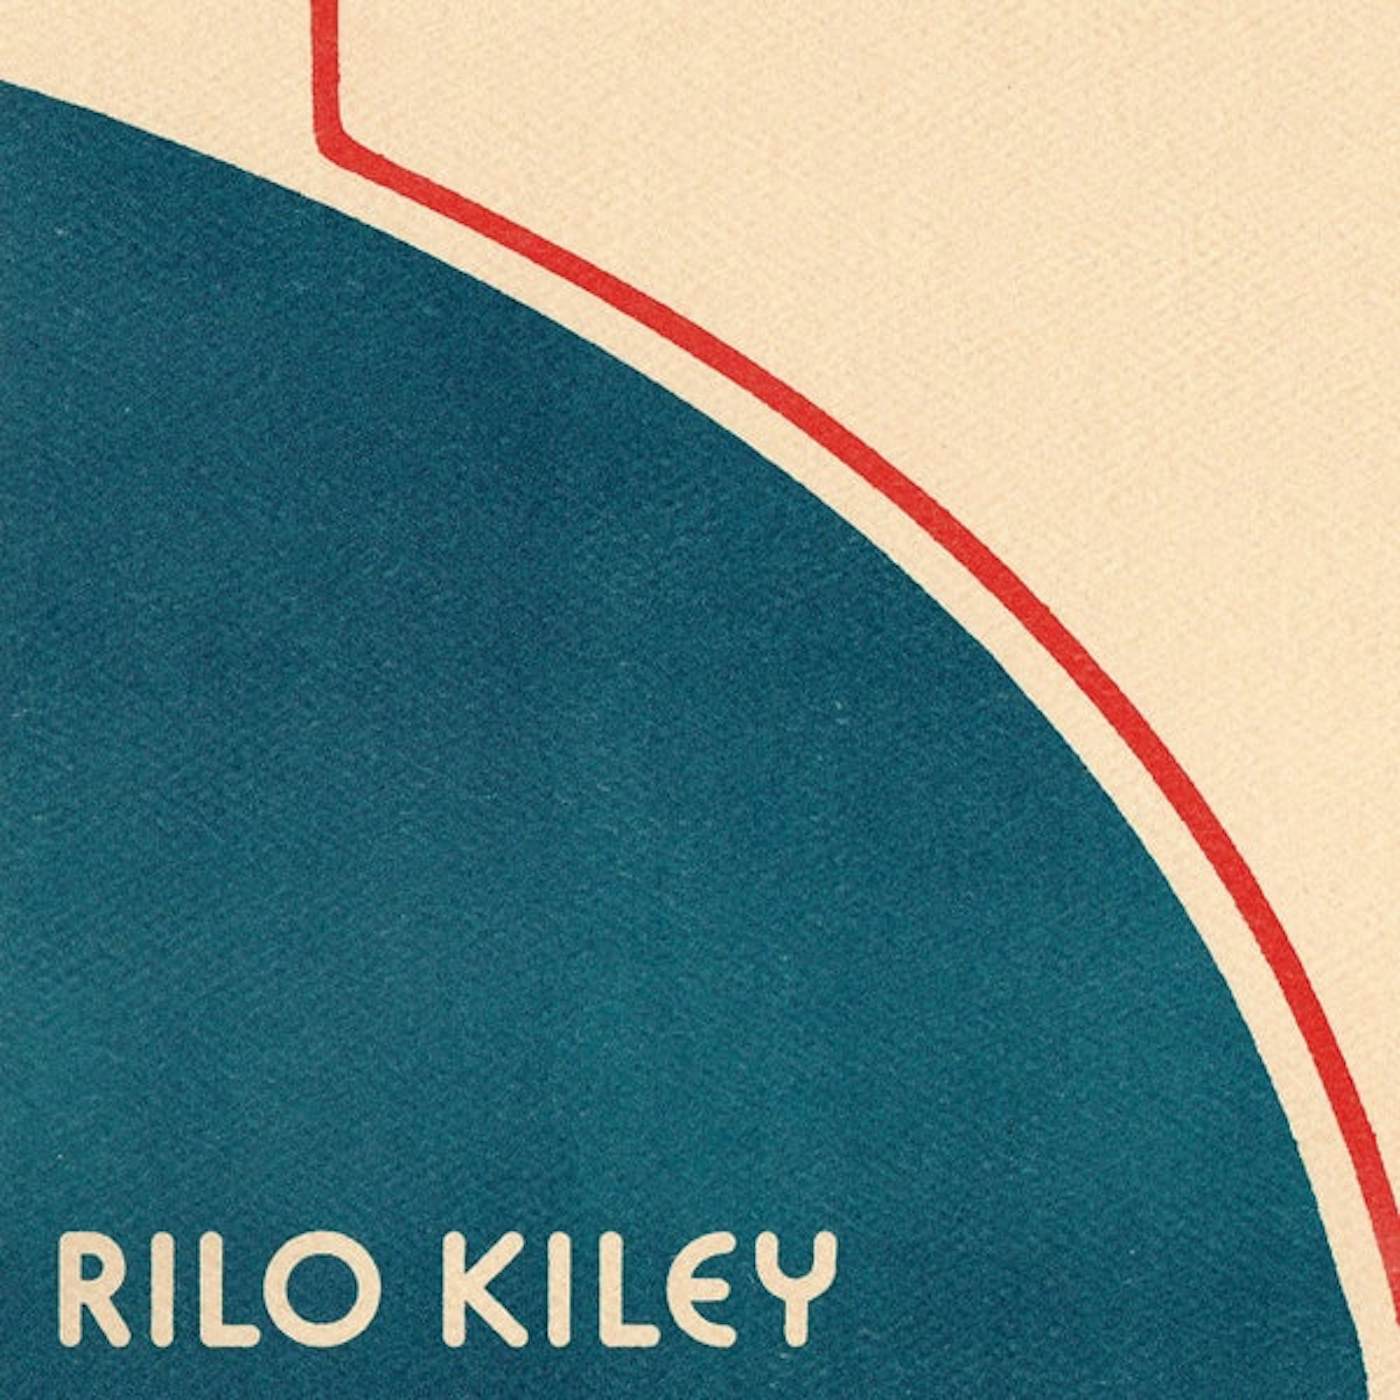 Rilo Kiley Vinyl Record